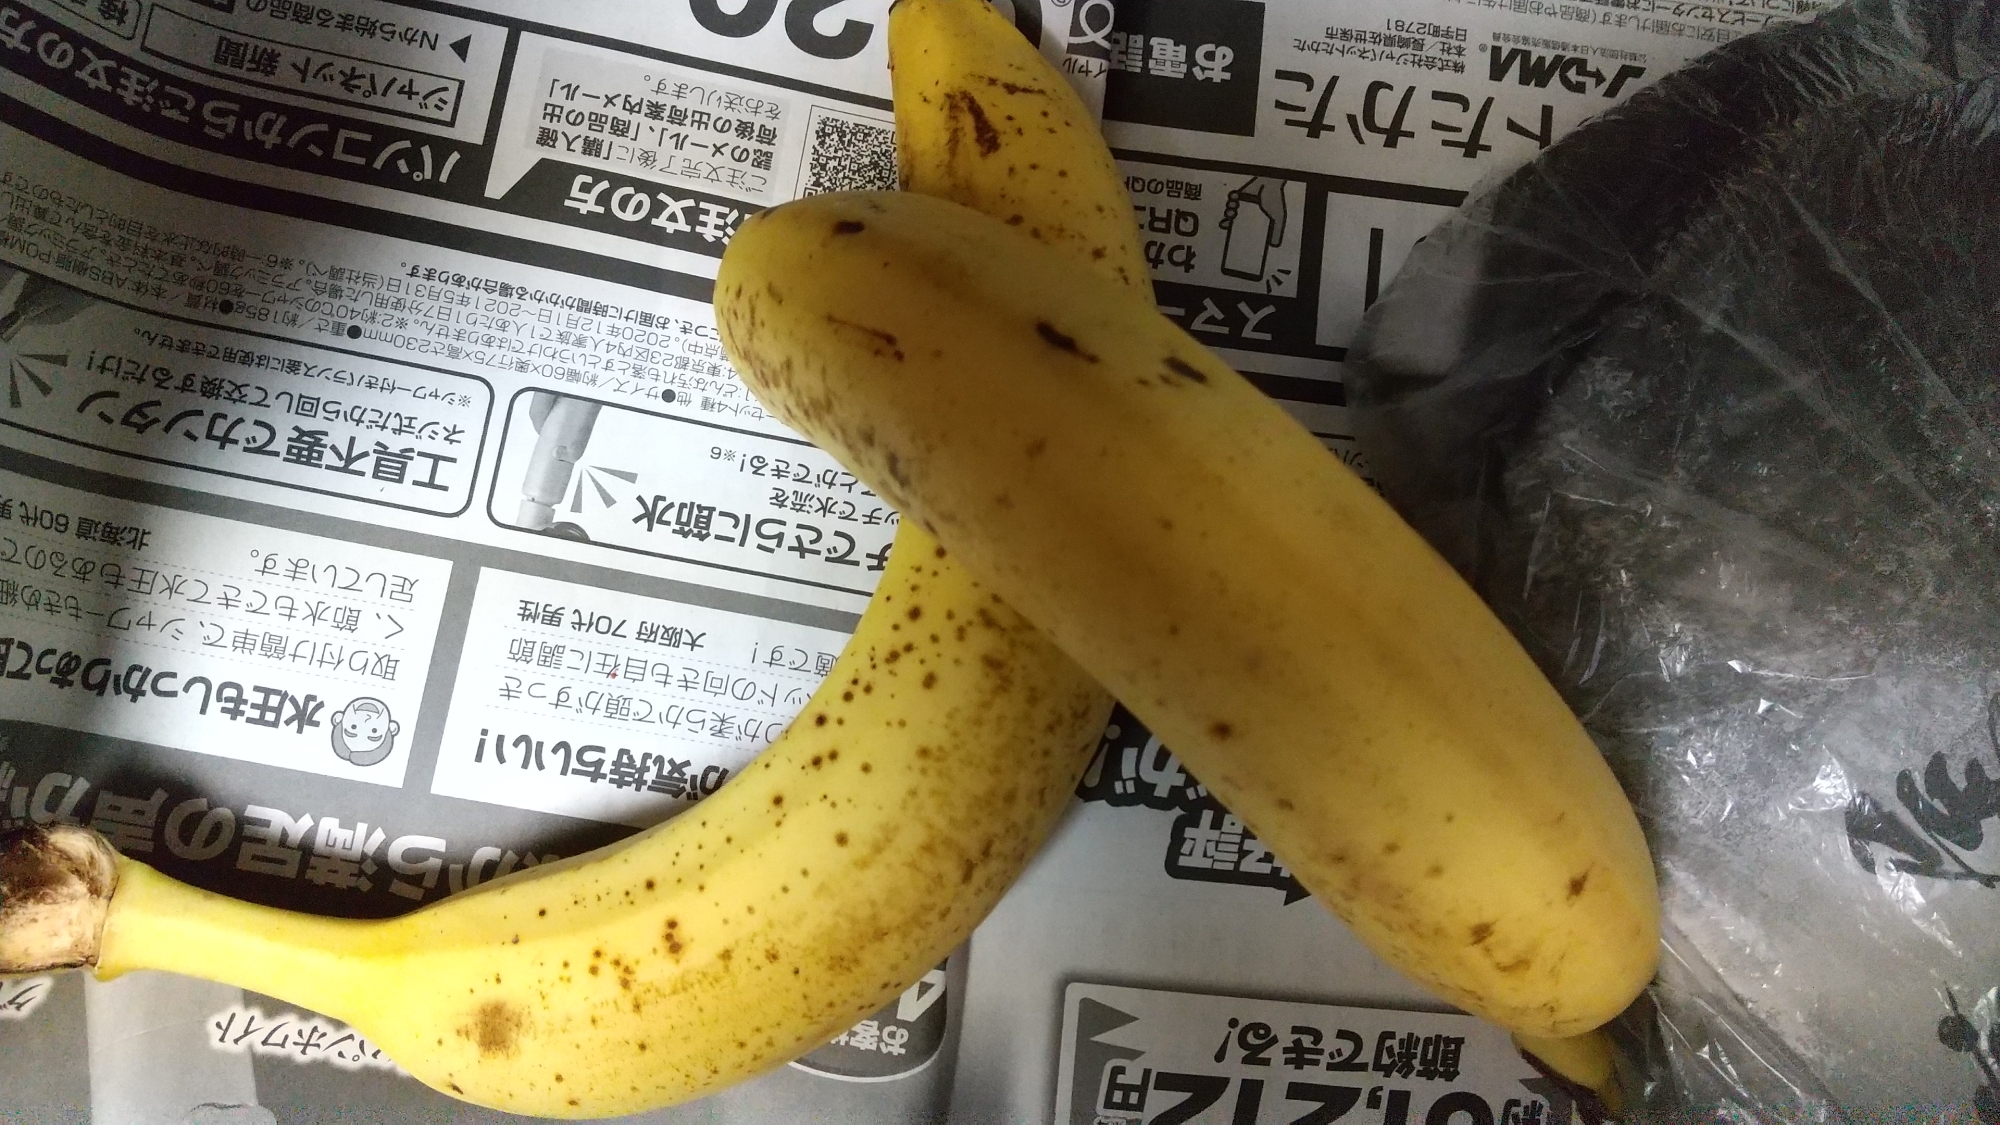 バナナの冷蔵保存方法